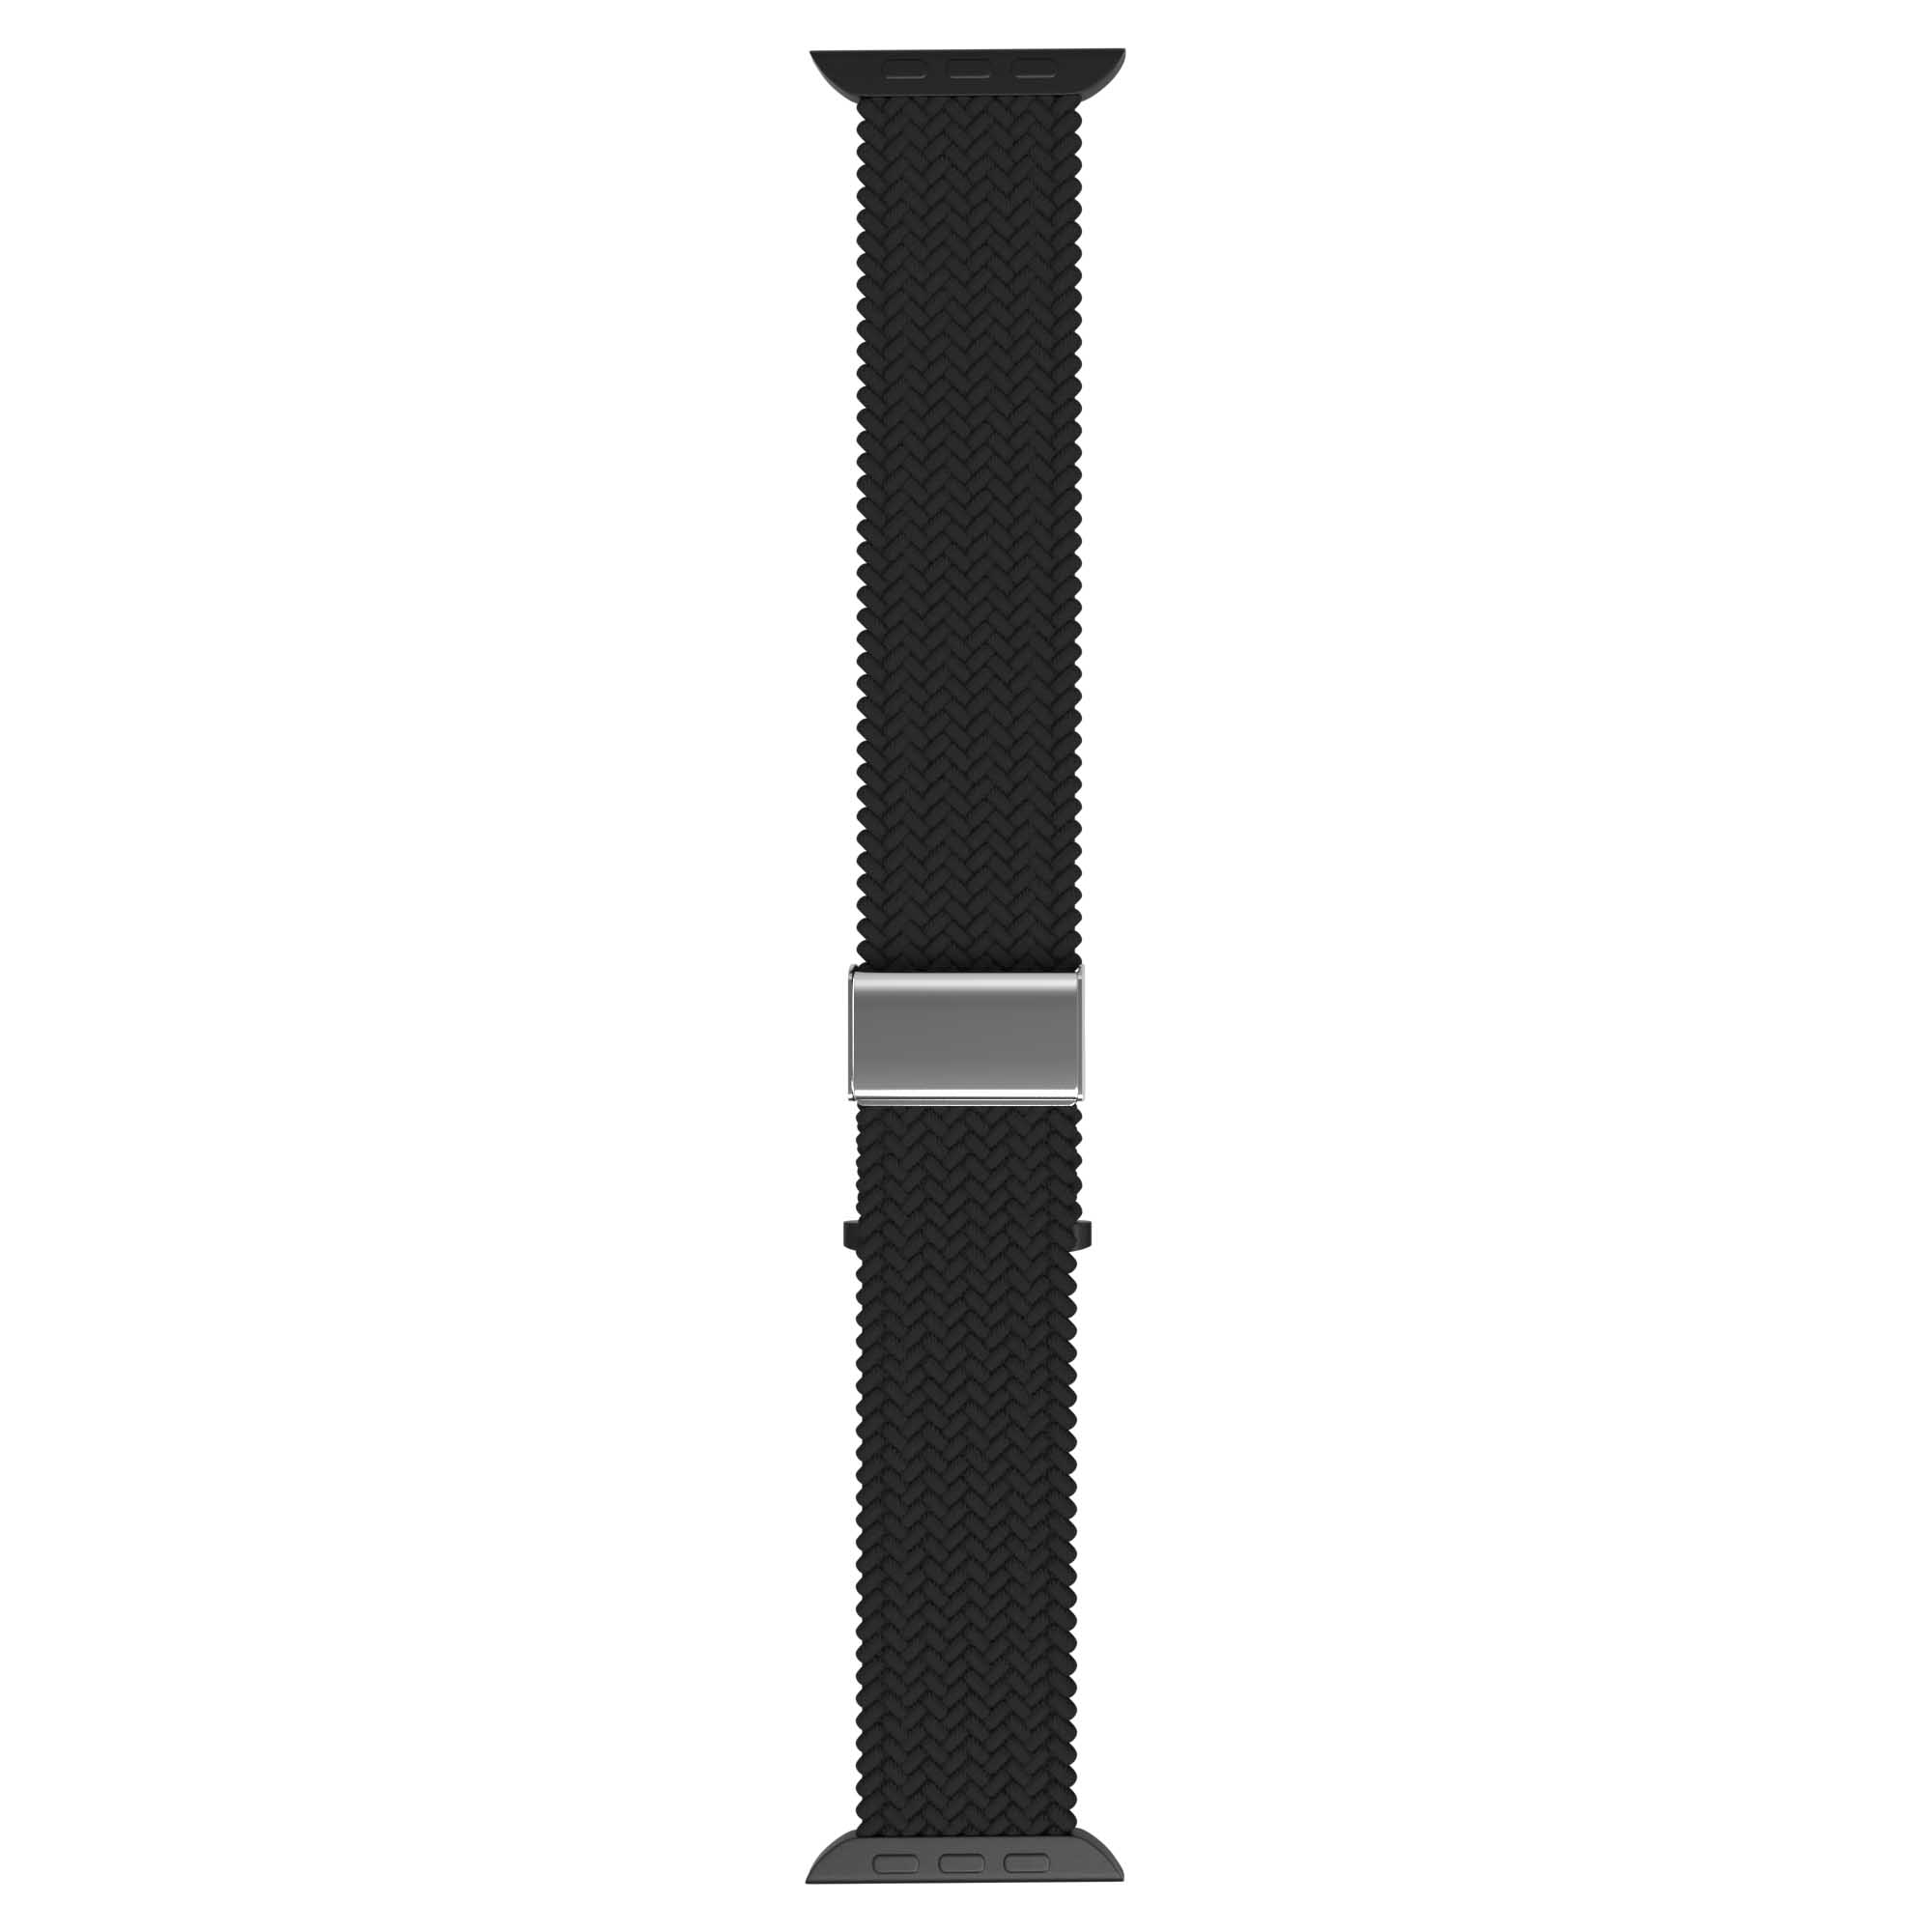 Flätat Nylonarmband Till Apple Watch - Svart